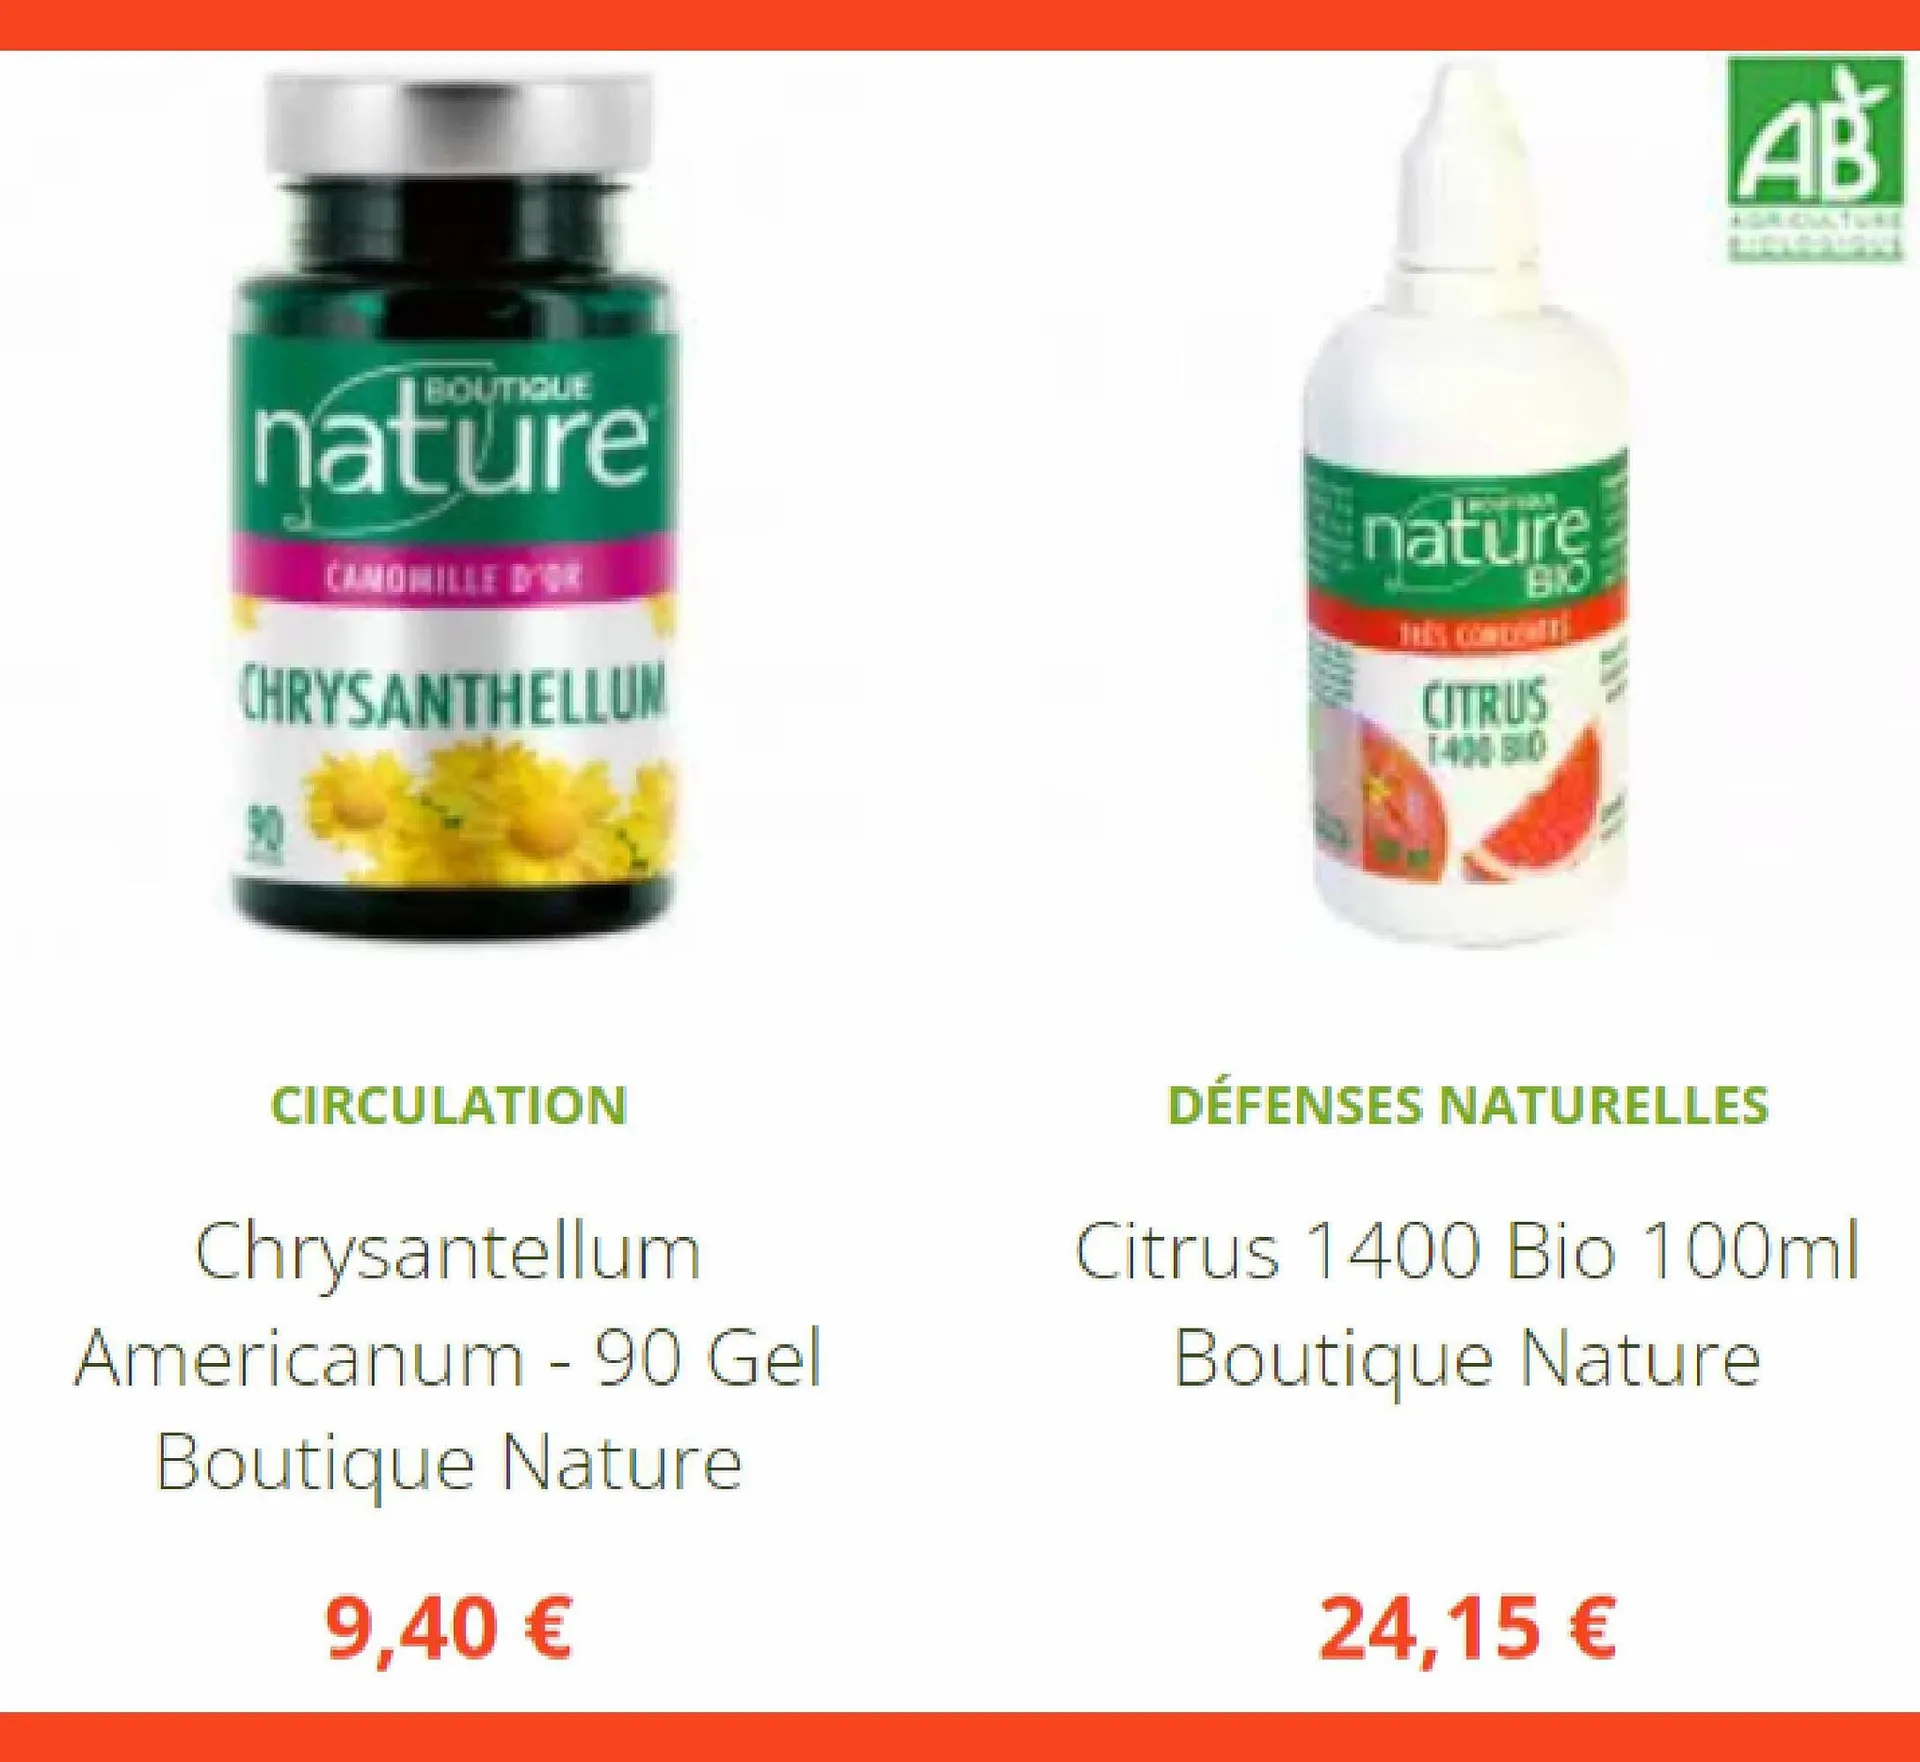 Catalogue Boutique Nature - 3